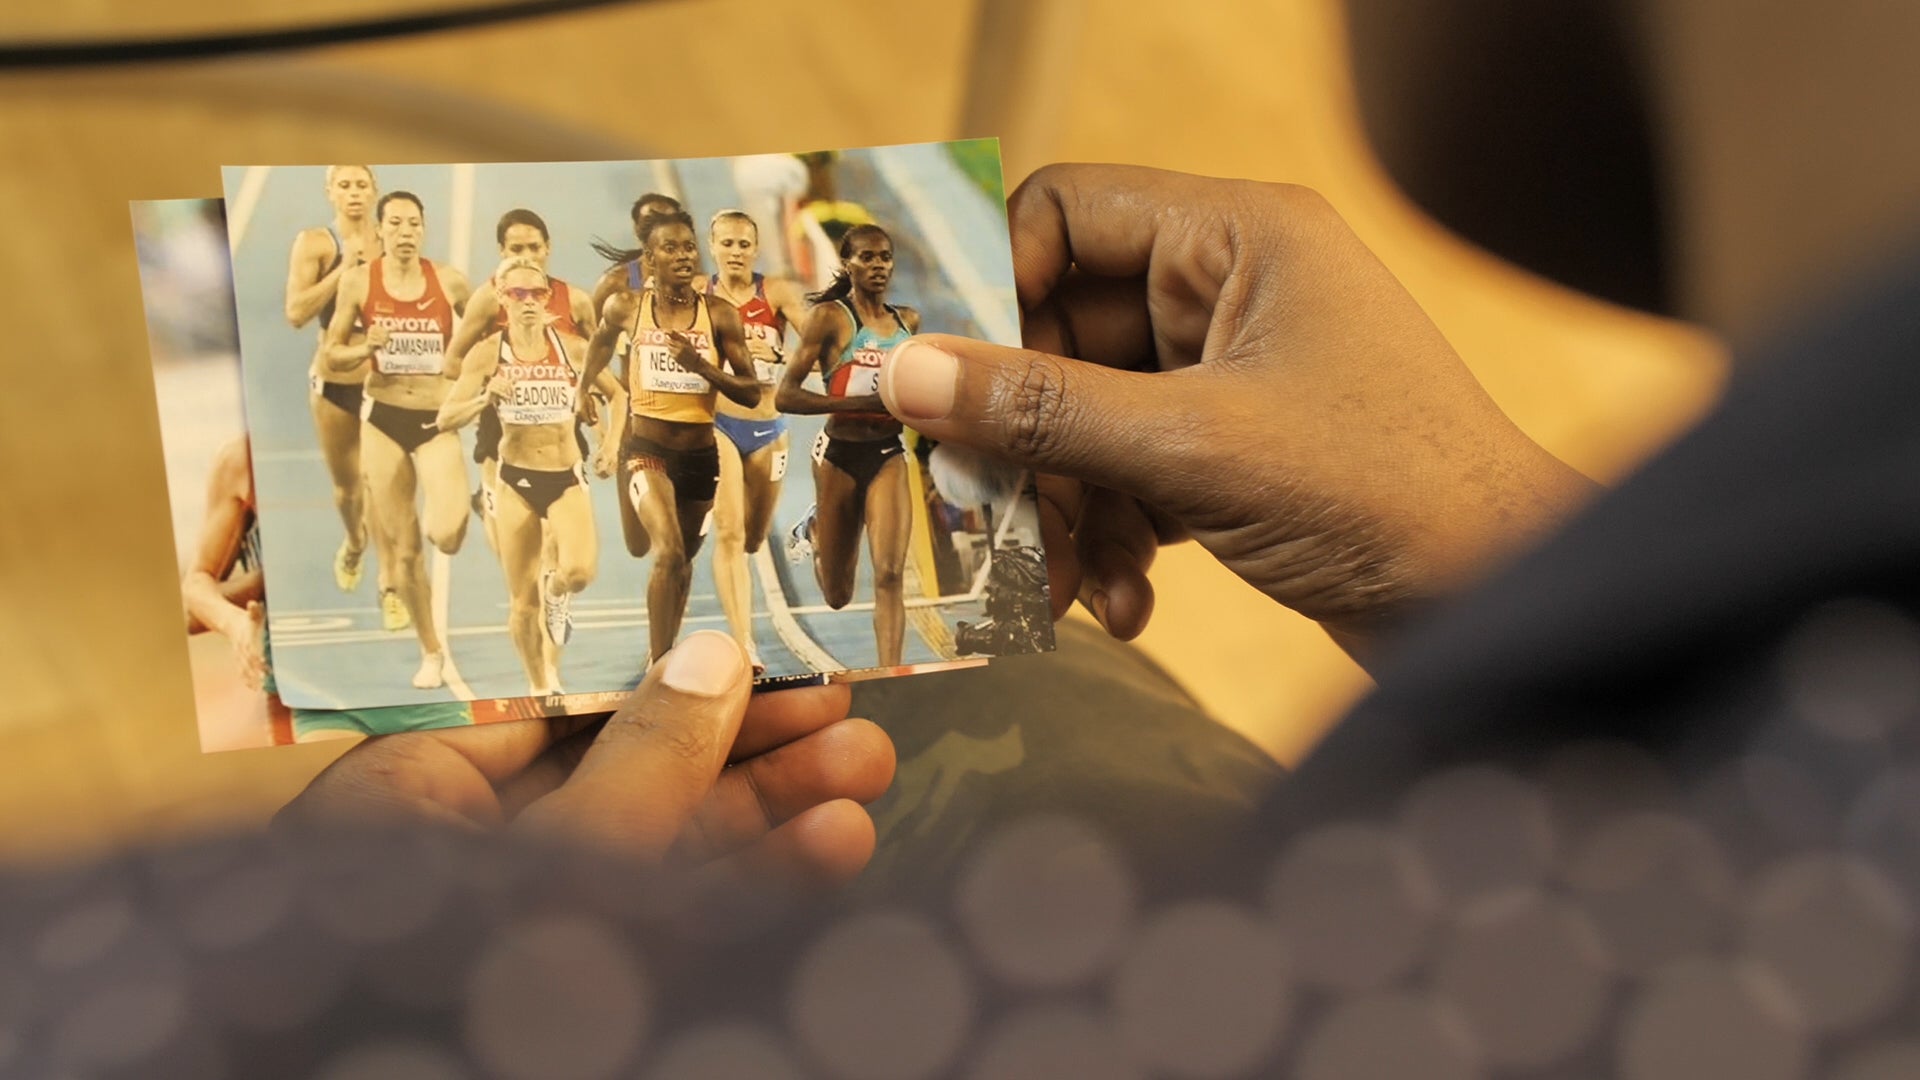 Die ugandische Läuferin Annet Negesa mit einem Foto von sich bei den Weltmeisterschaften 2011 in Daegu, Südkorea. Negesa wurde nach dem Reglement für Geschlechtstests ins Visier genommen und 2012 angewiesen, sich einer medizinisch unnötigen Operation zu unterziehen. 